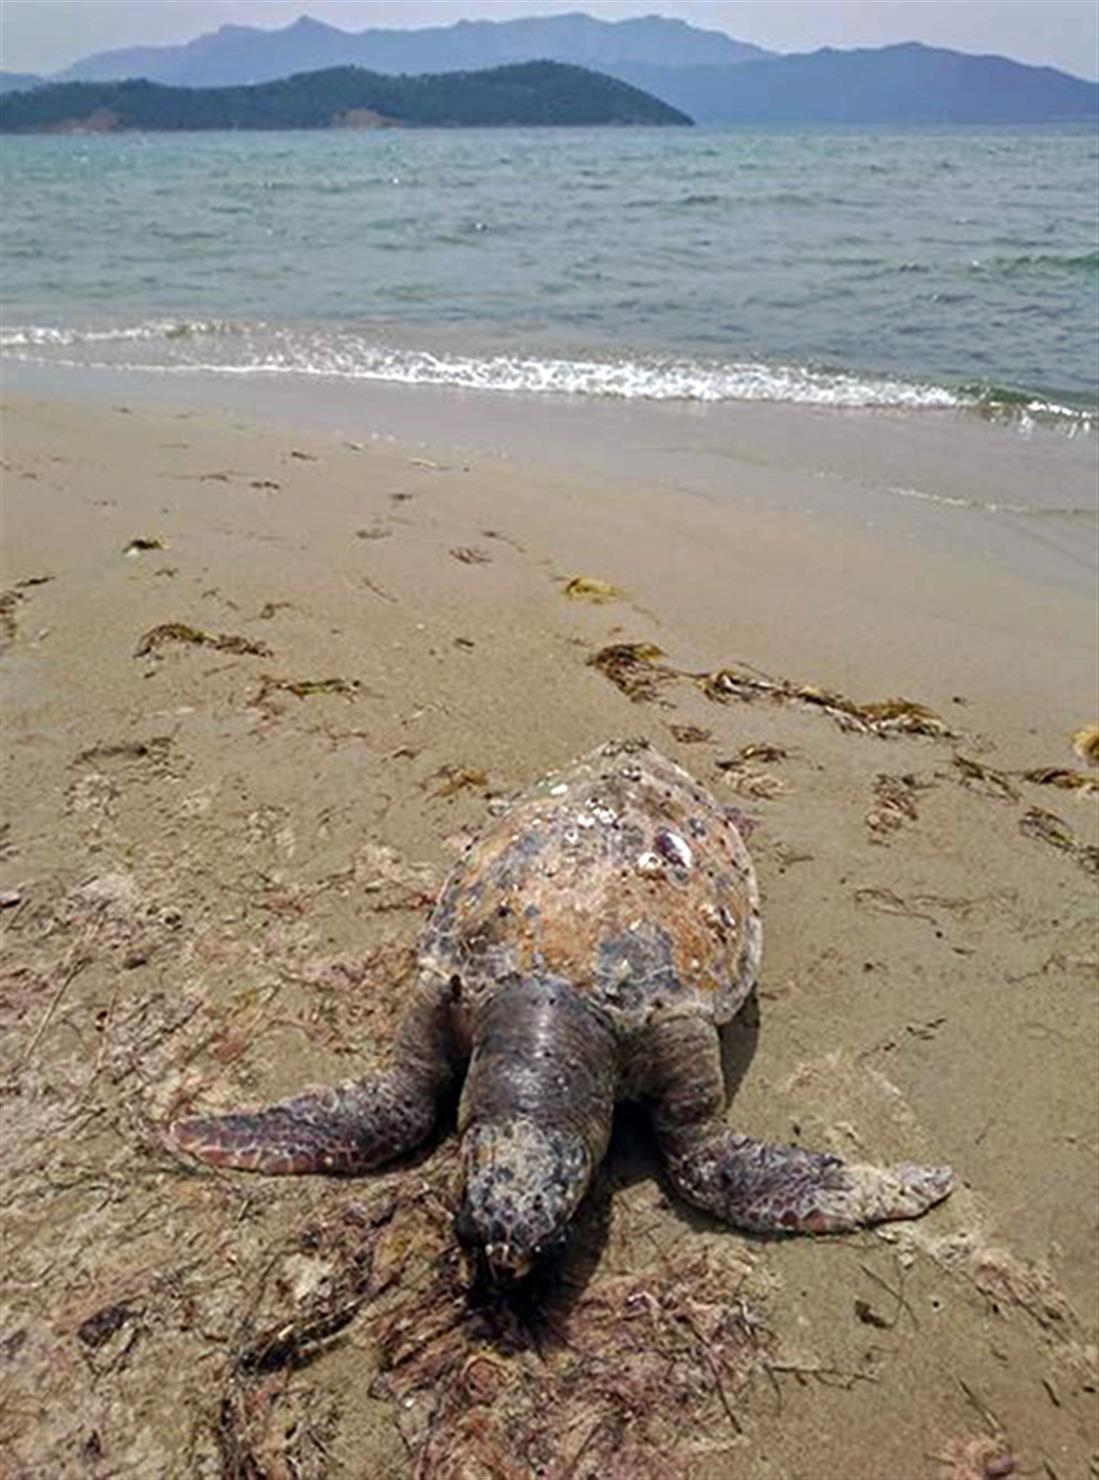 θαλάσσια χελώνα - νεκρή - παραλία Κεραμωτής - Καβάλα